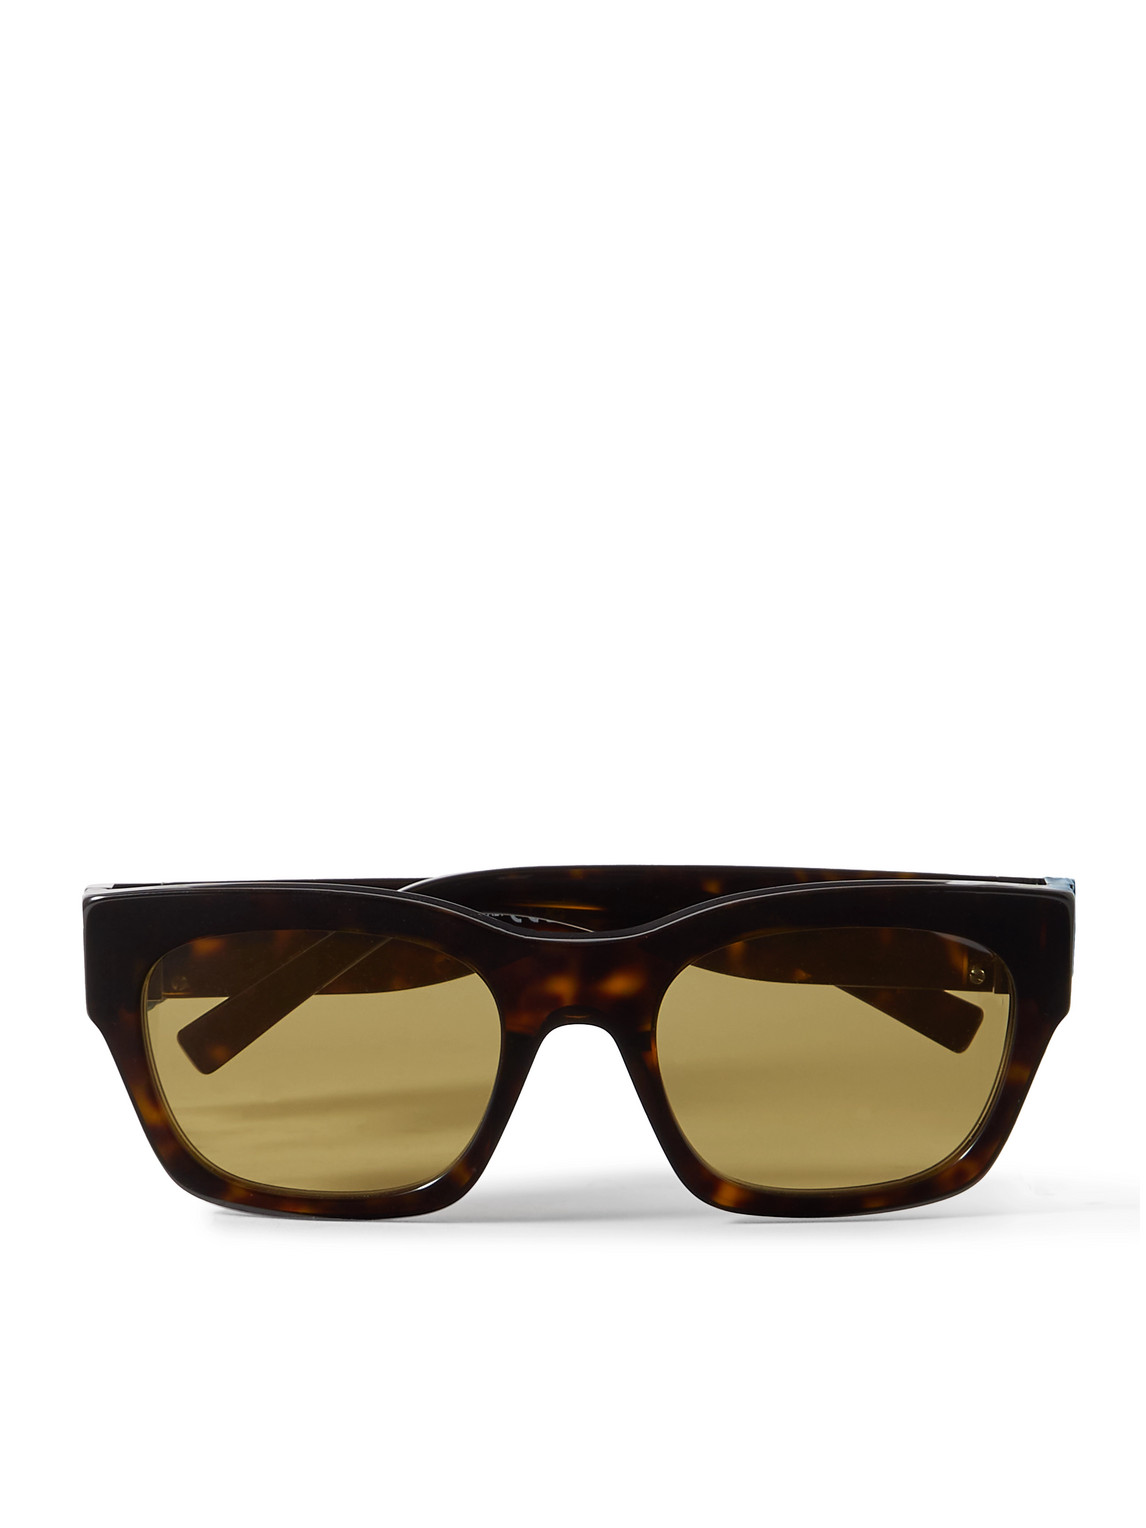 Givenchy 4g D-frame Tortoiseshell Acetate Sunglasses In Black